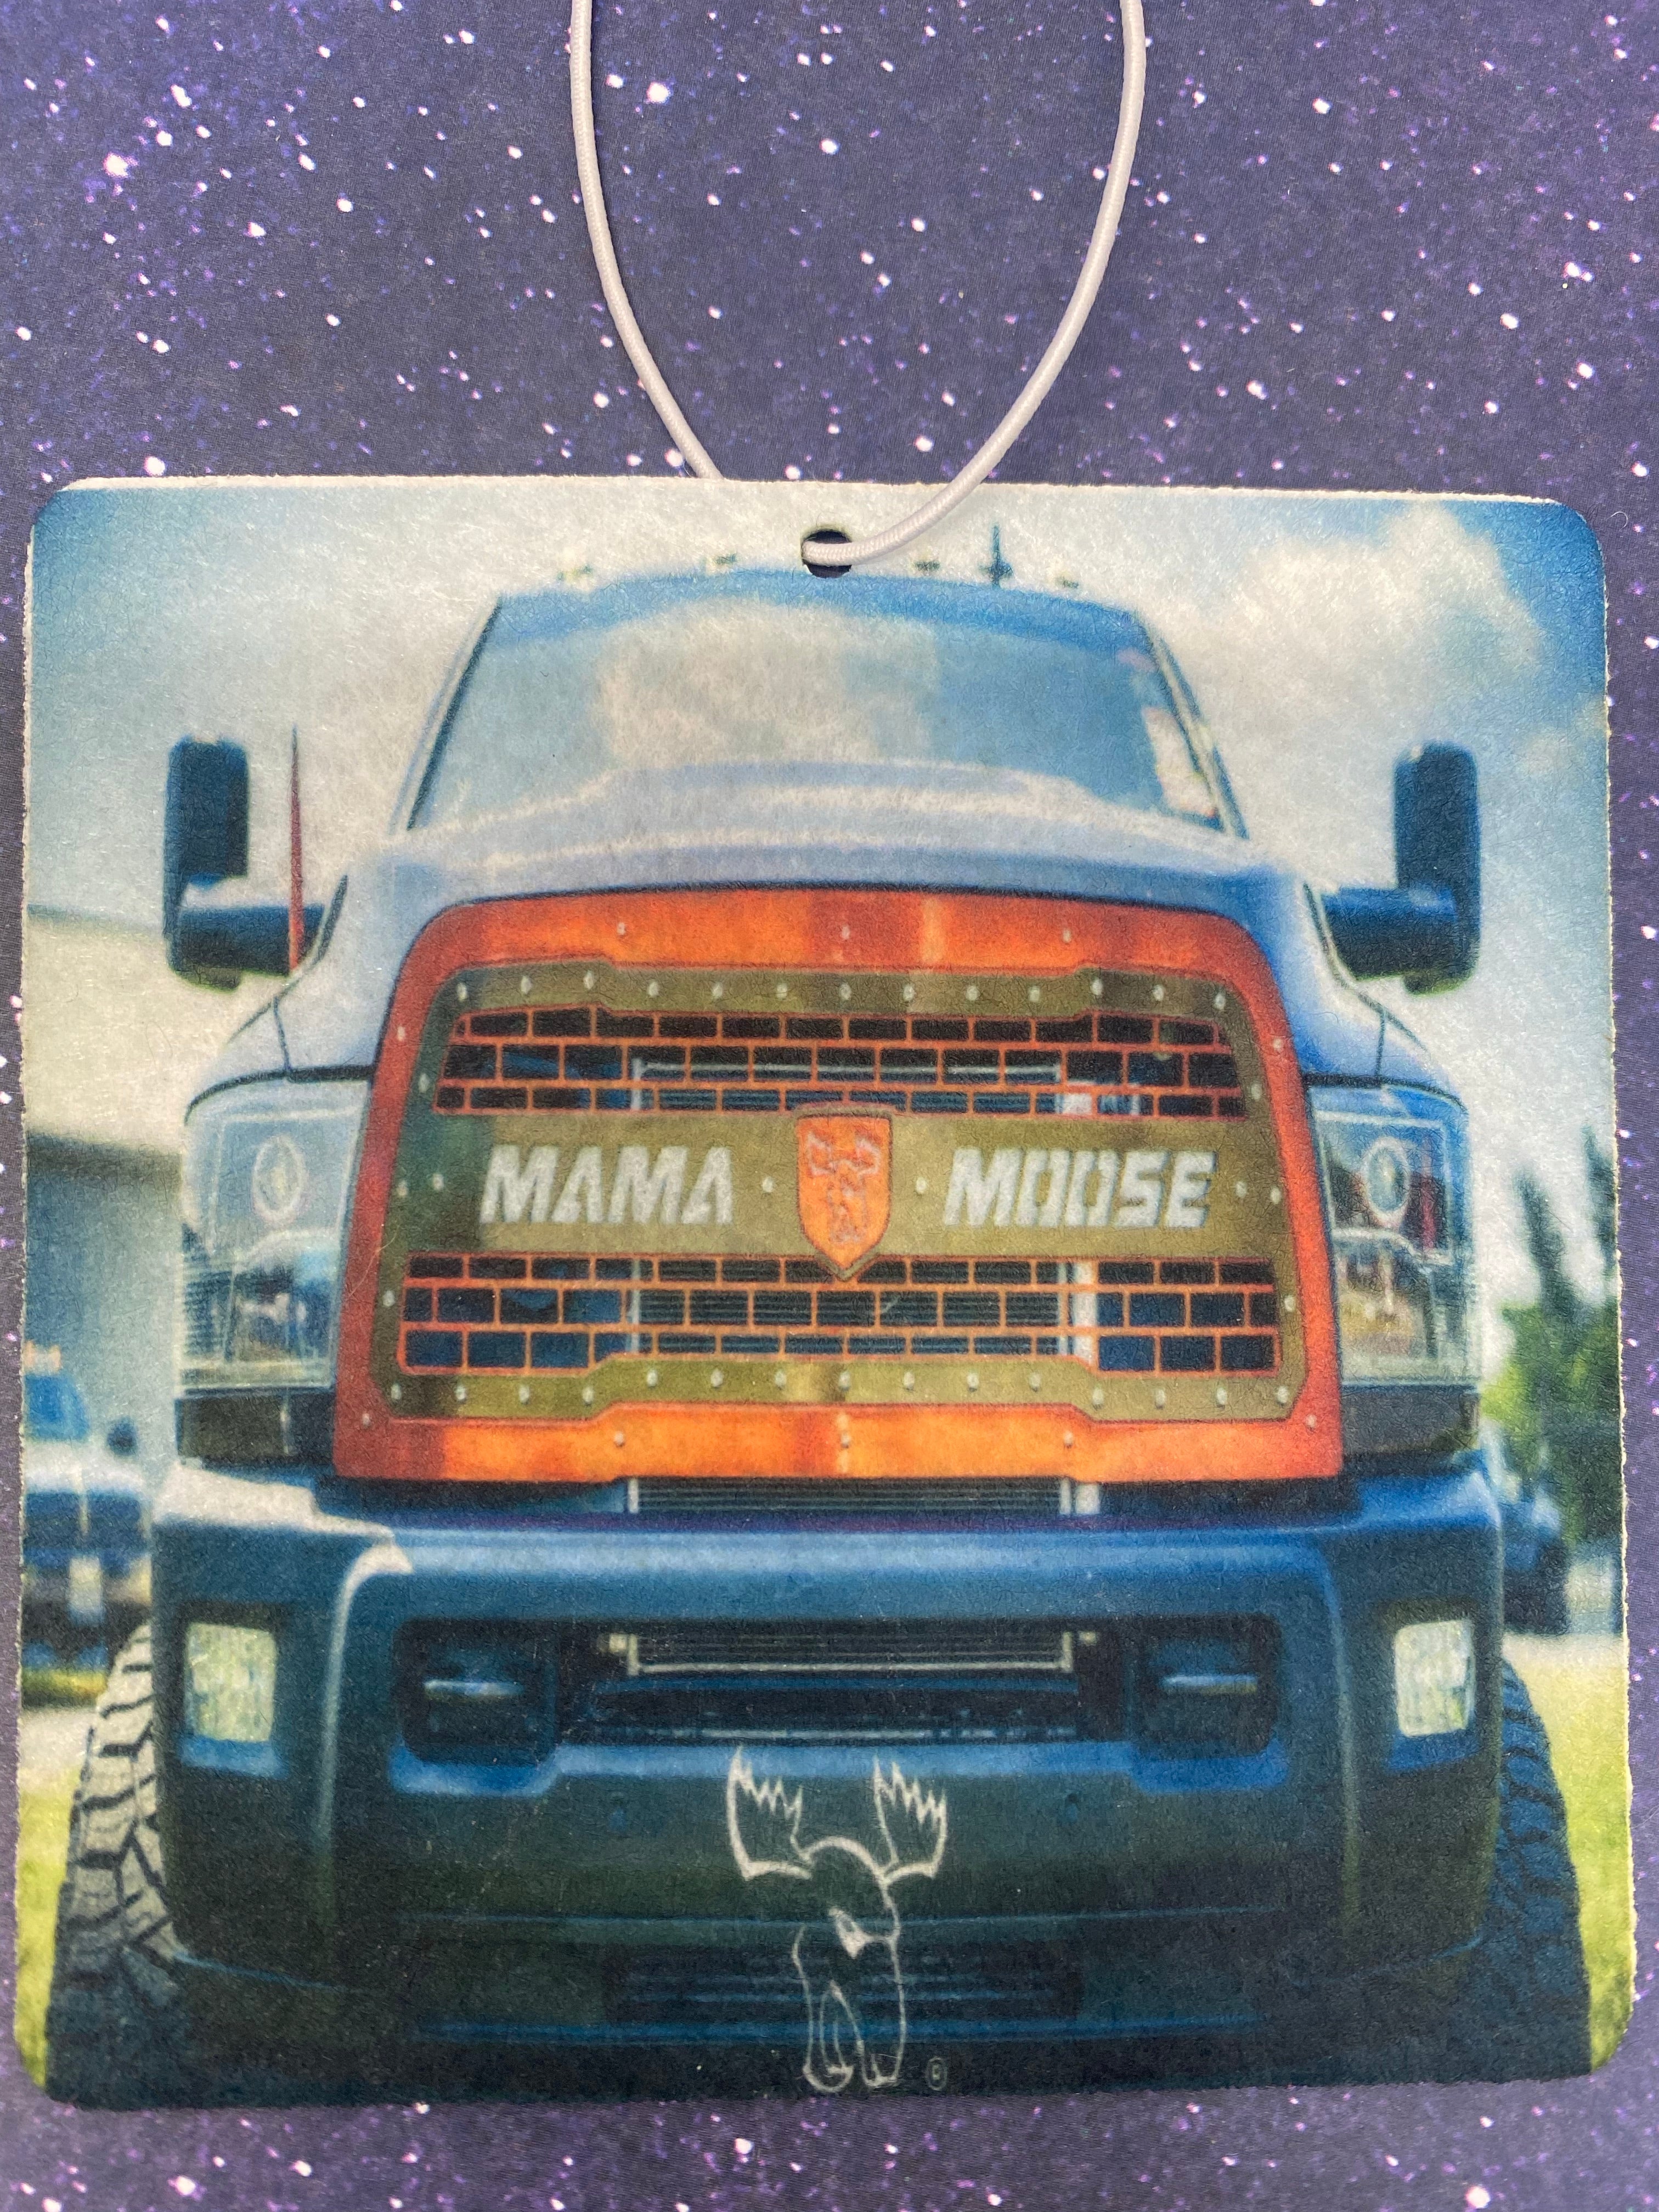 Mama Moose air fresheners